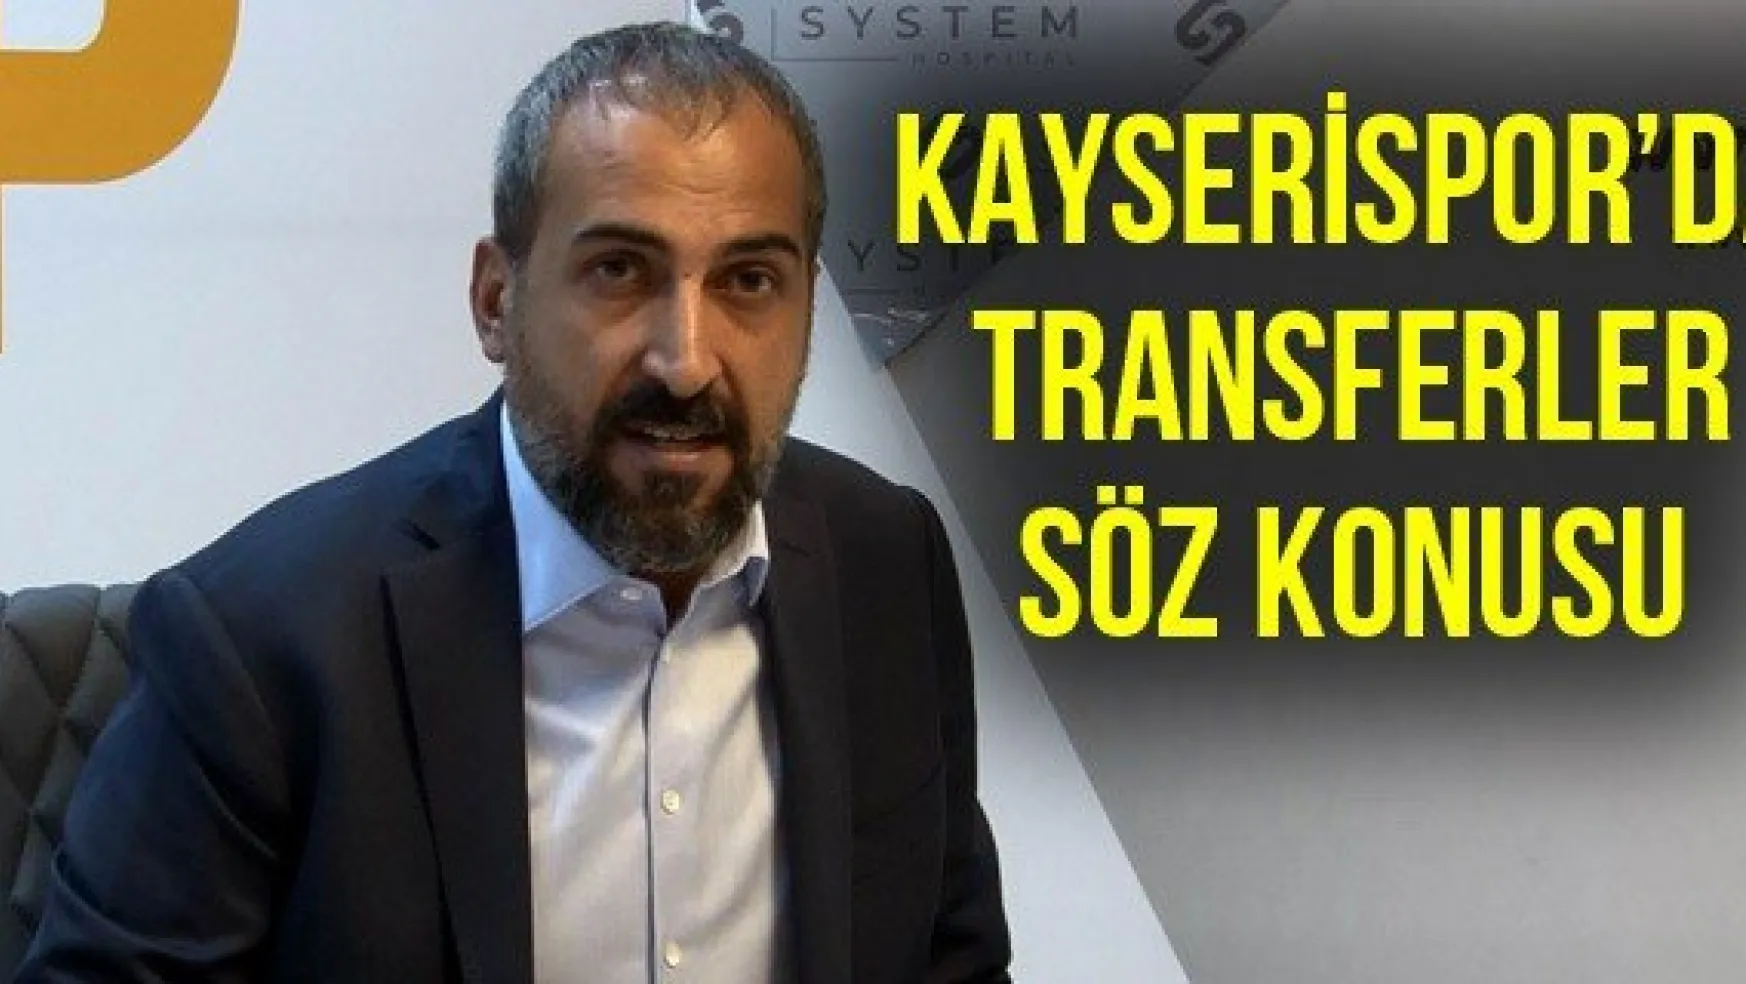 Kayserispor'da transferler söz konusu